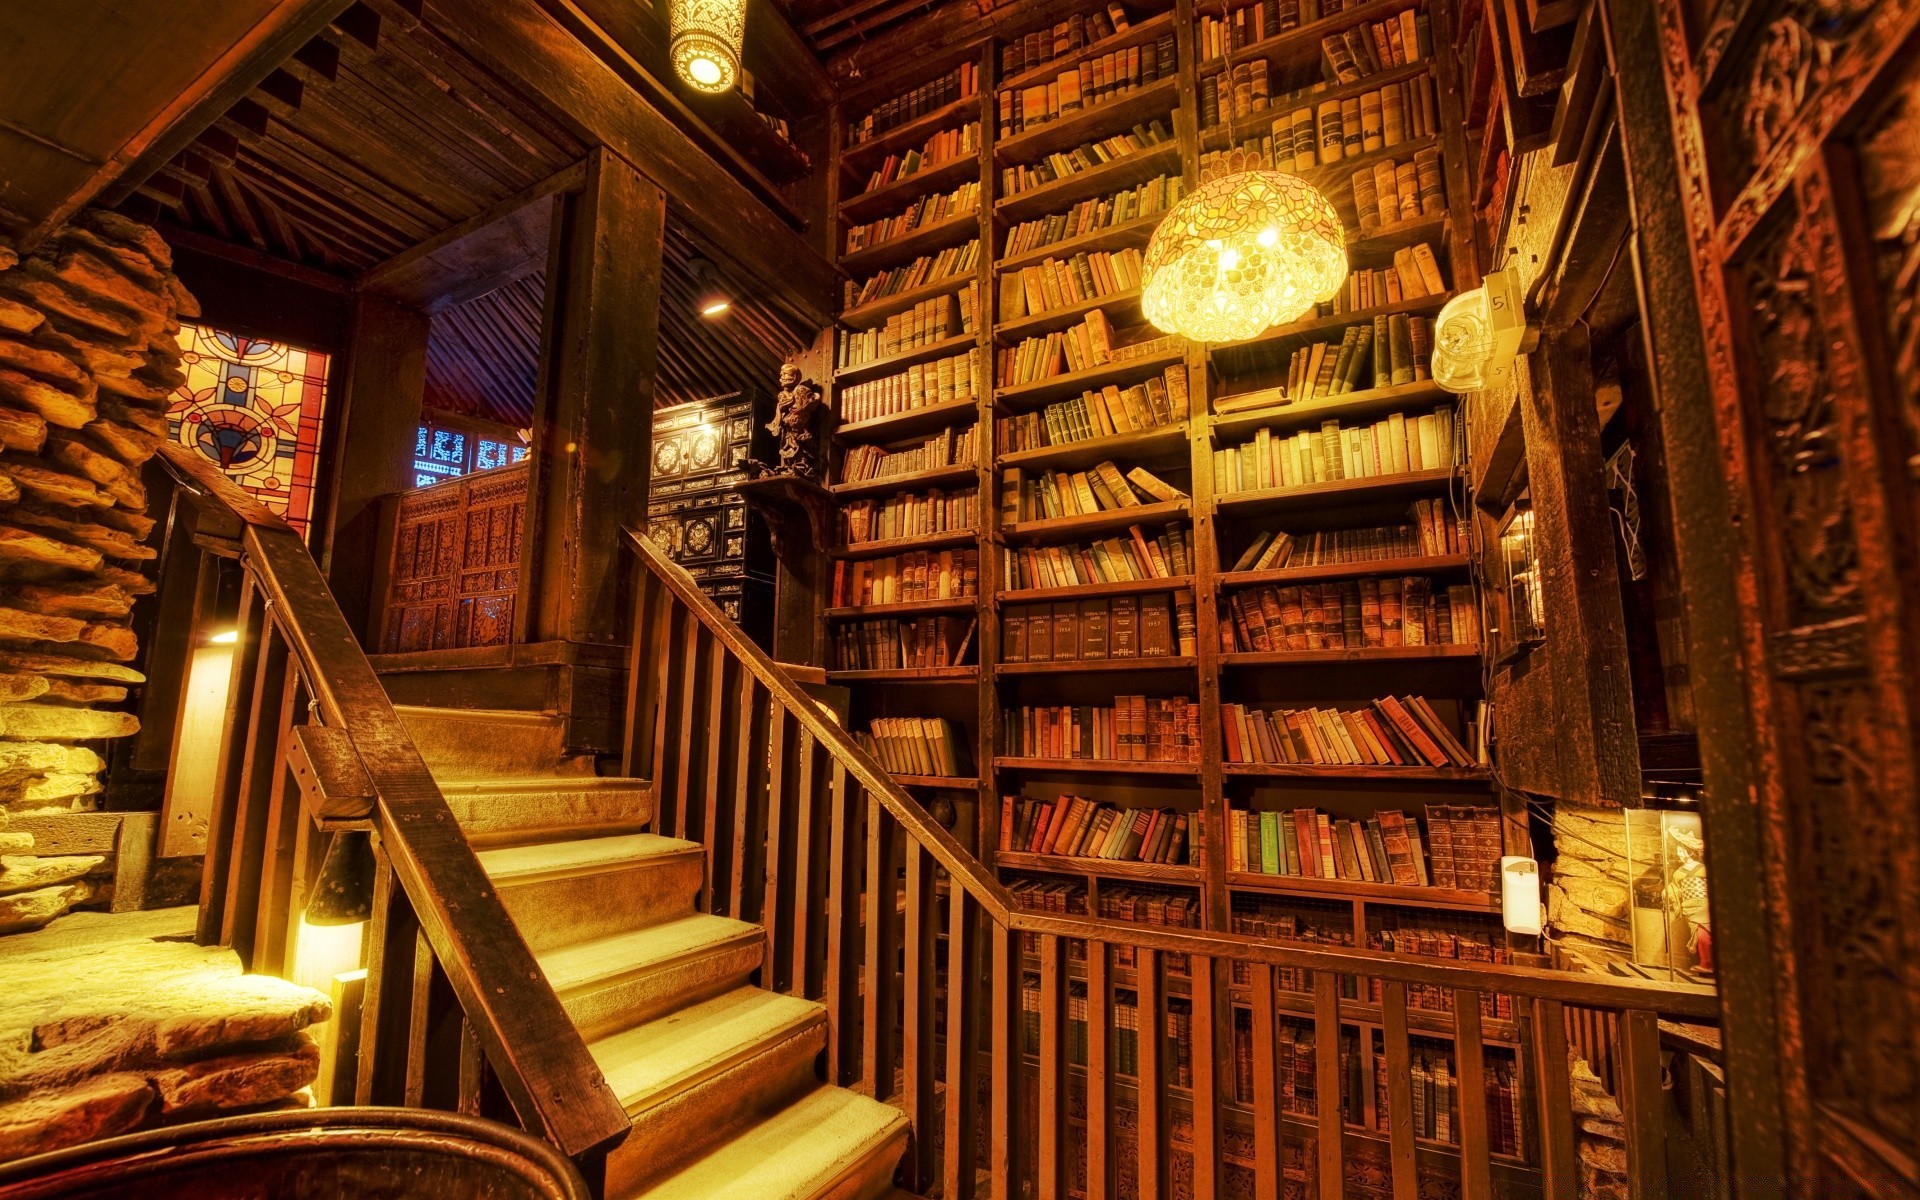 винтаж библиотека полка в помещении акции архитектура путешествия этажерка дом книжный магазин шаг